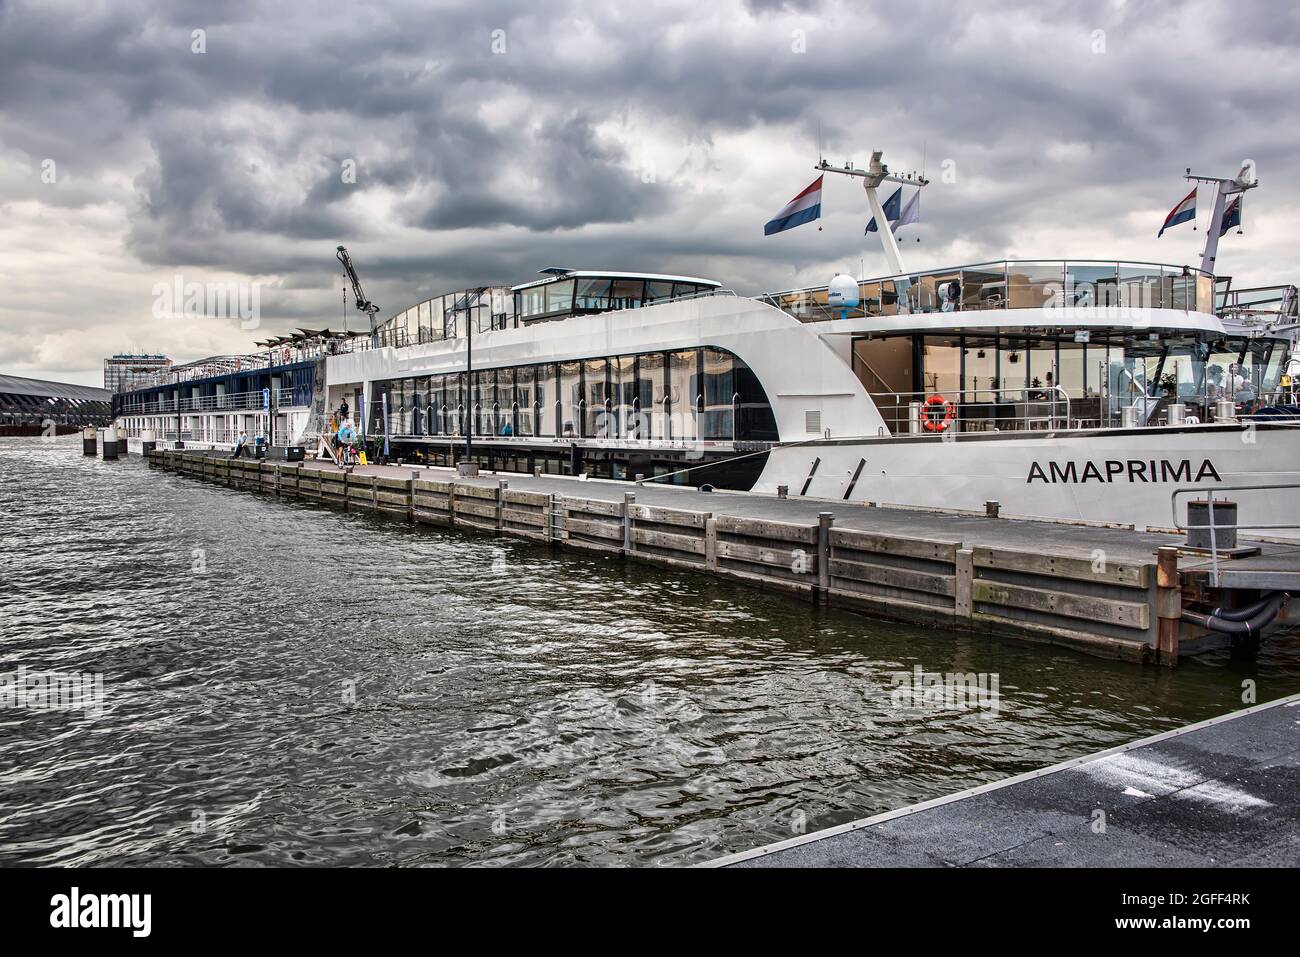 Amsterdam, Niederlande - 13. Juli 2017: Die Amaprima, Teil der Amawaterway River Boat Flotte, dockte in Amsterdam als Teil eines Rheinschiffes an Stockfoto